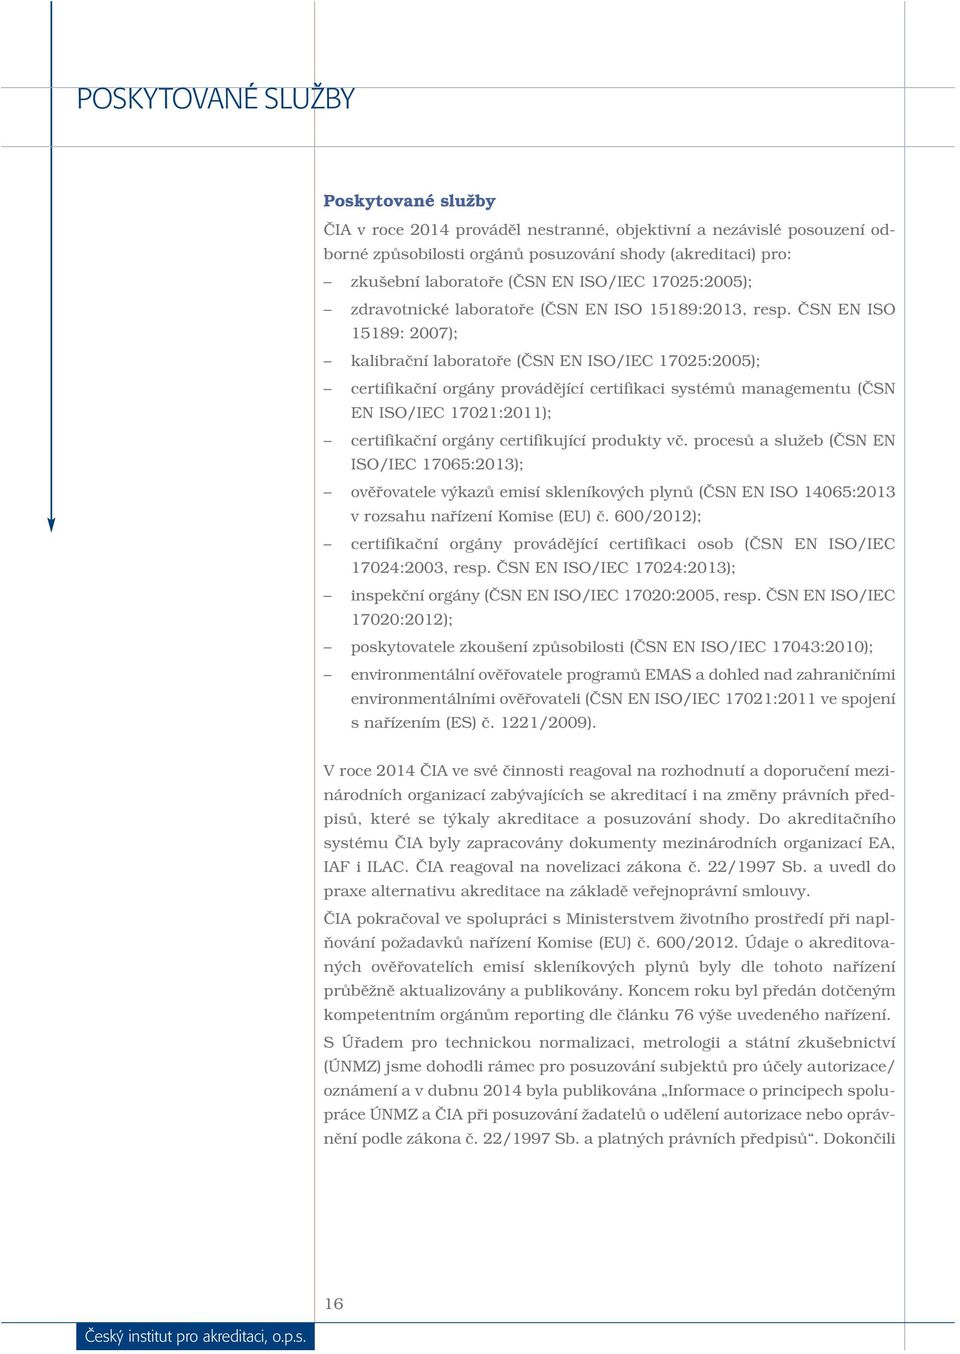 ČSN EN ISO 15189: 2007); kalibrační laboratoře (ČSN EN ISO/IEC 17025:2005); certifikační orgány provádějící certifikaci systémů managementu (ČSN EN ISO/IEC 17021:2011); certifikační orgány